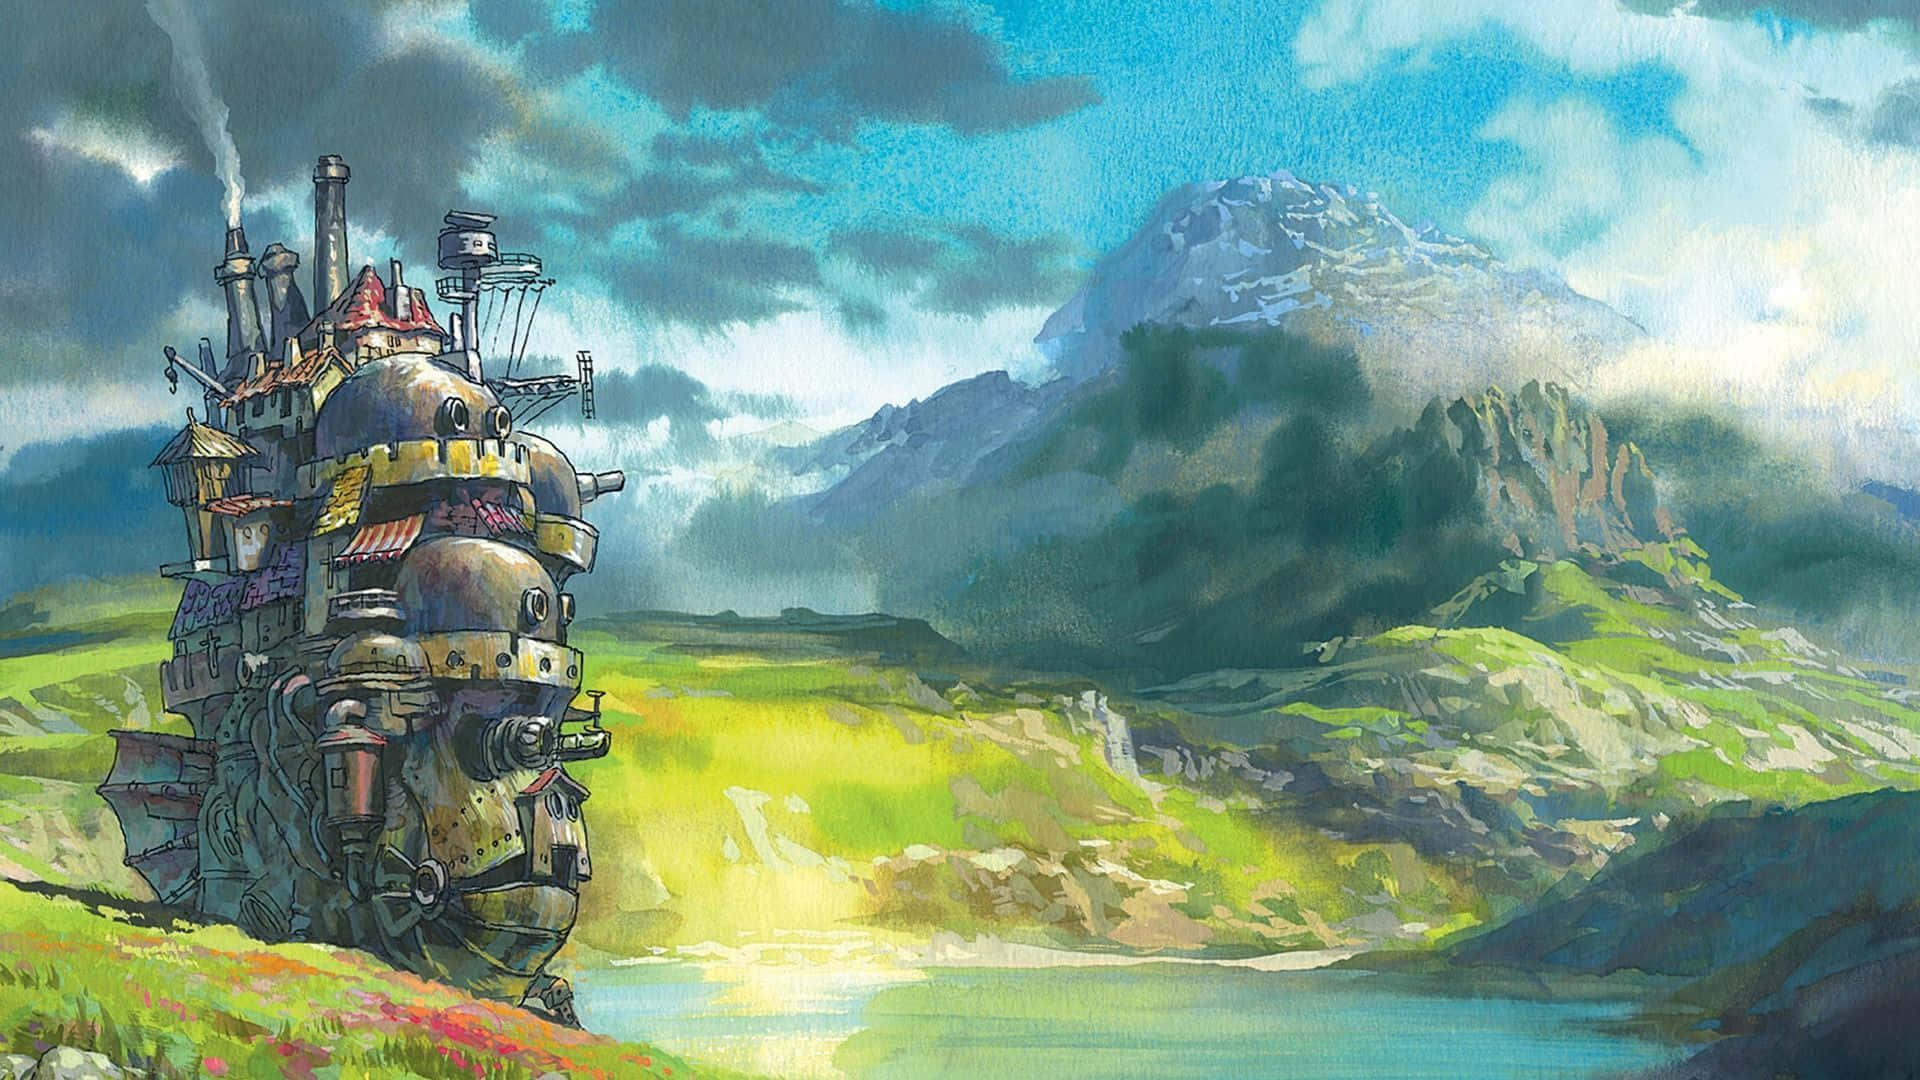 Tauchensie Ein In Die Bezaubernde Kunst Von Studio Ghibli Mit Diesem Ästhetischen Desktop. Wallpaper